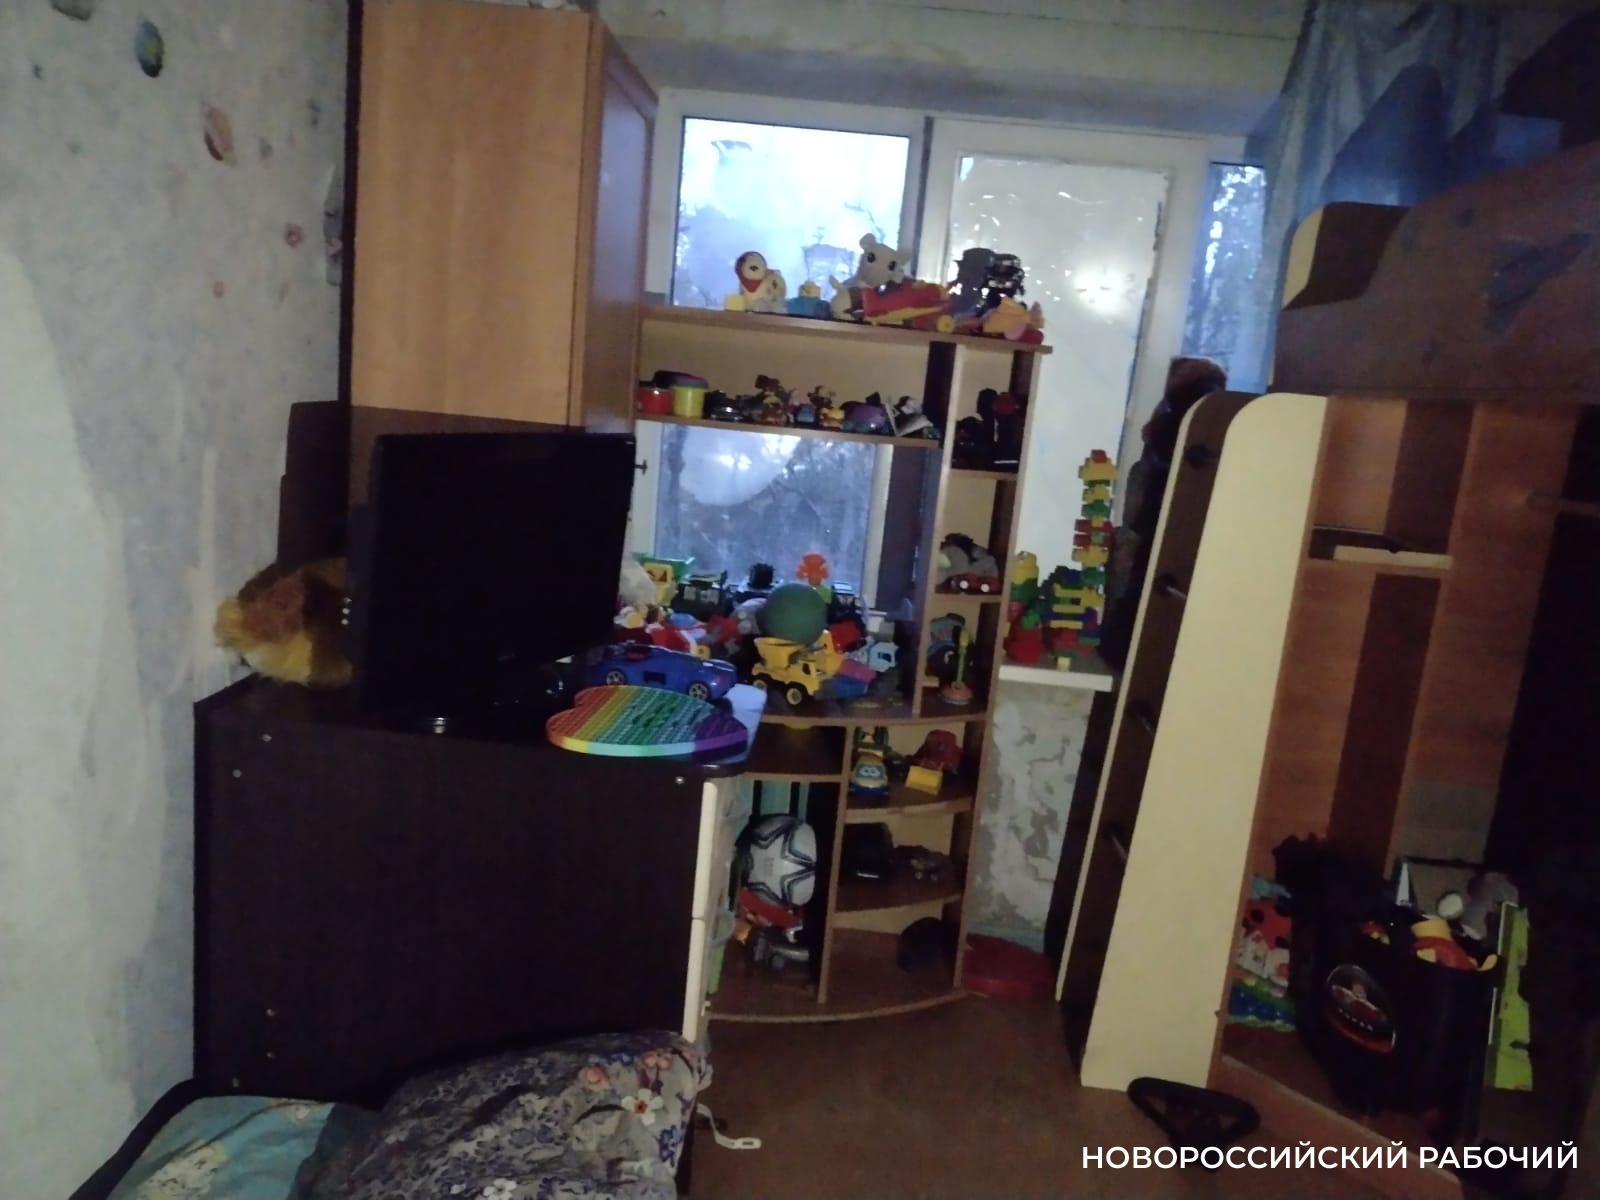 В Новороссийске добрые люди отремонтируют квартиру, пострадавшую после взрыва. Но помощь нужна еще!